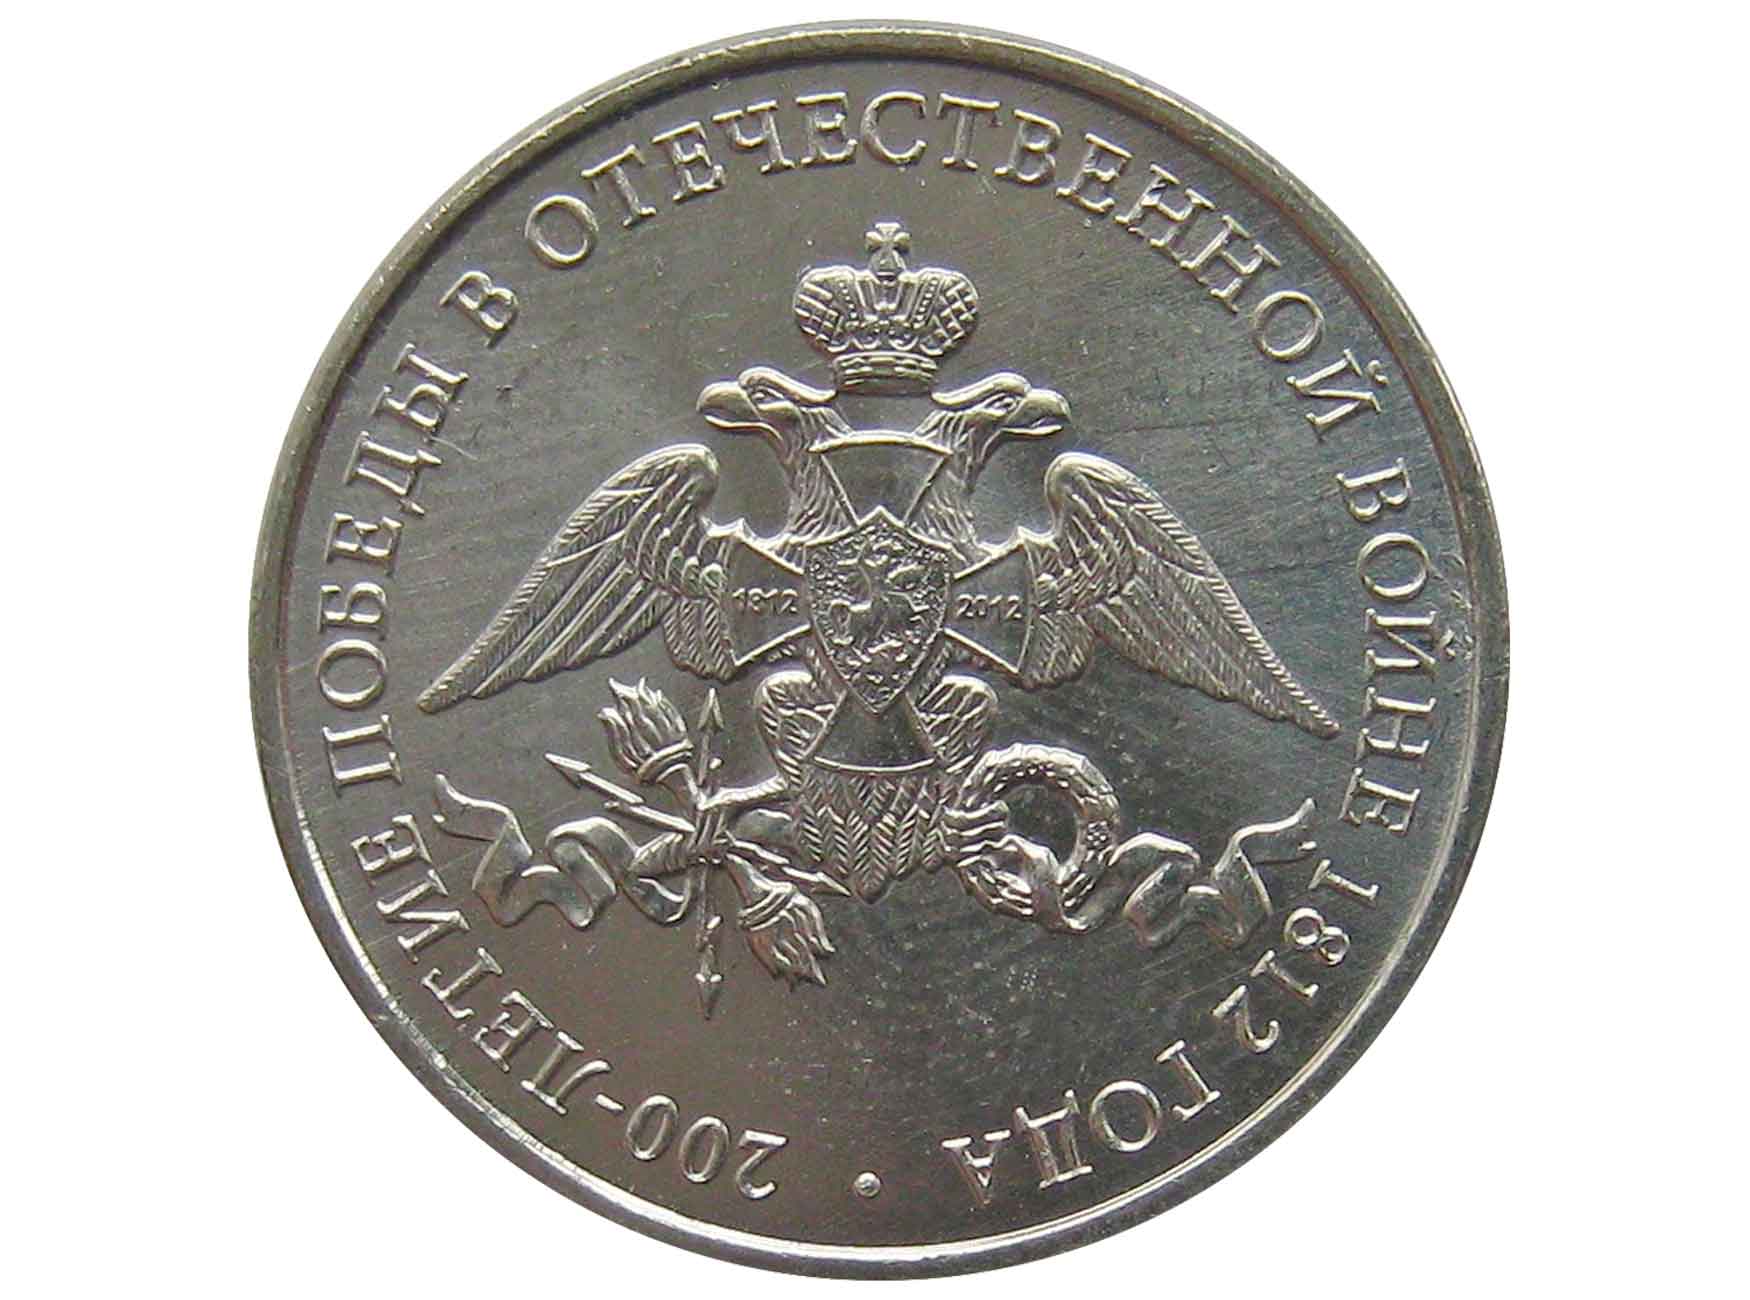 2 Рубля 2012 г генералы вся коллекция. Монеты россии 2012